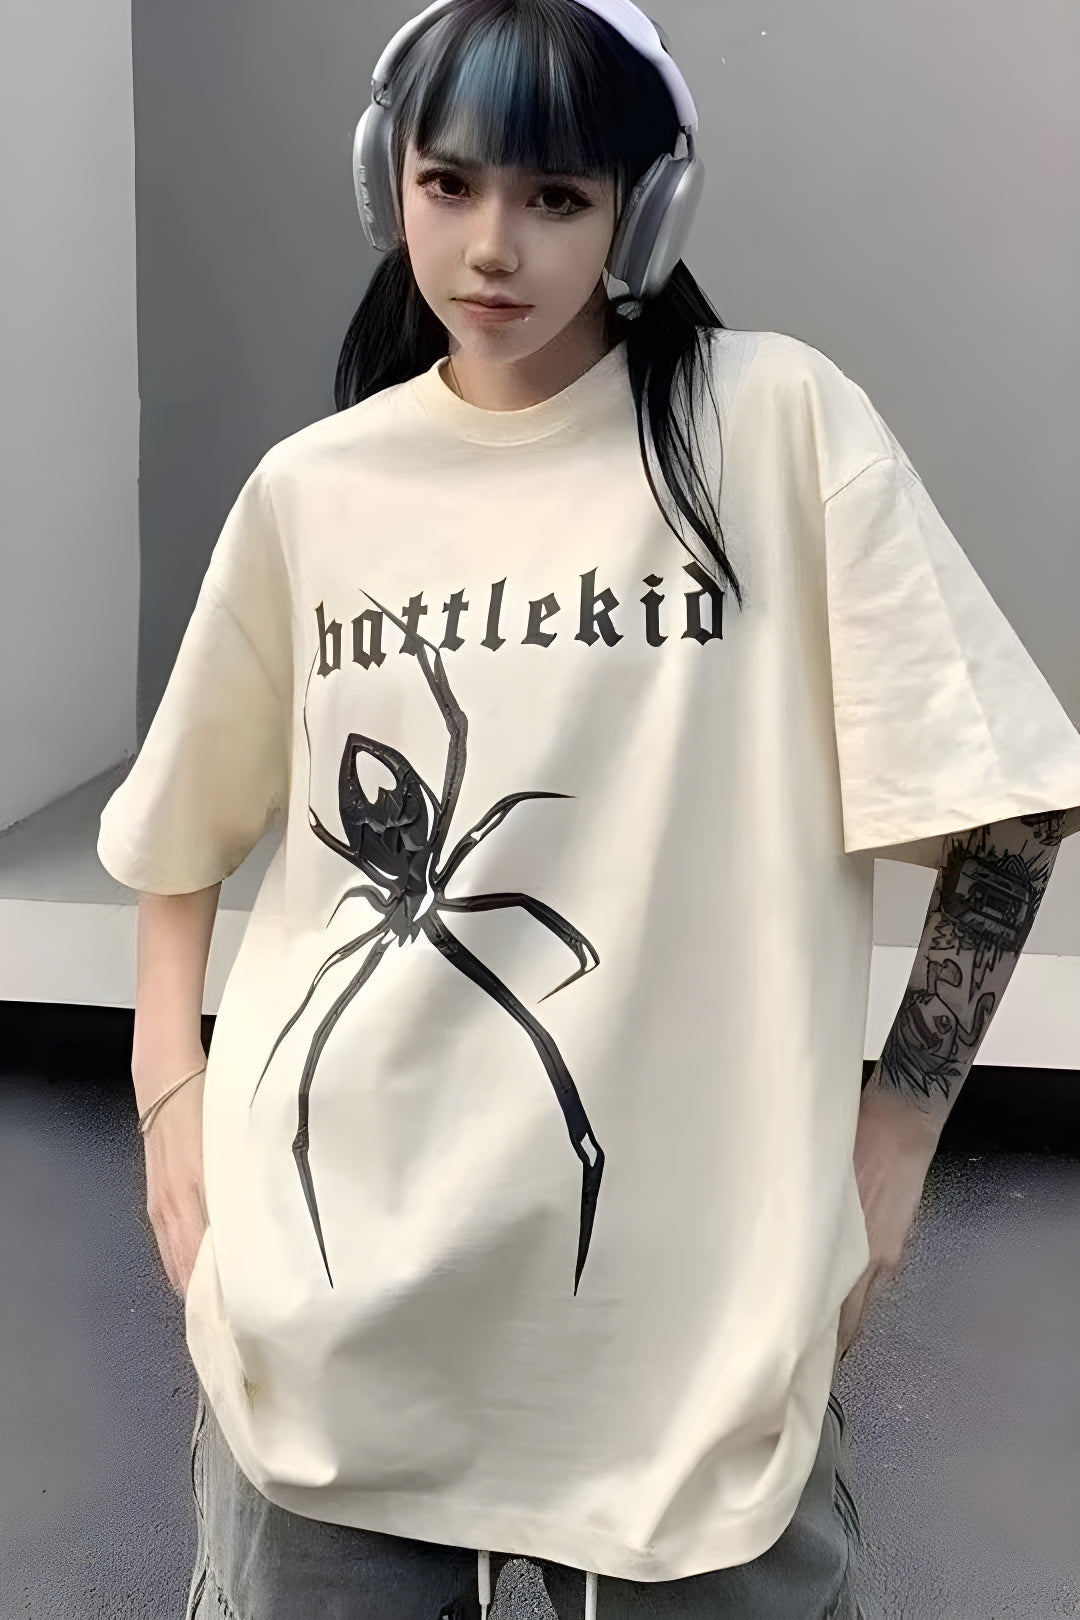 Battlekid Spider T-shirt